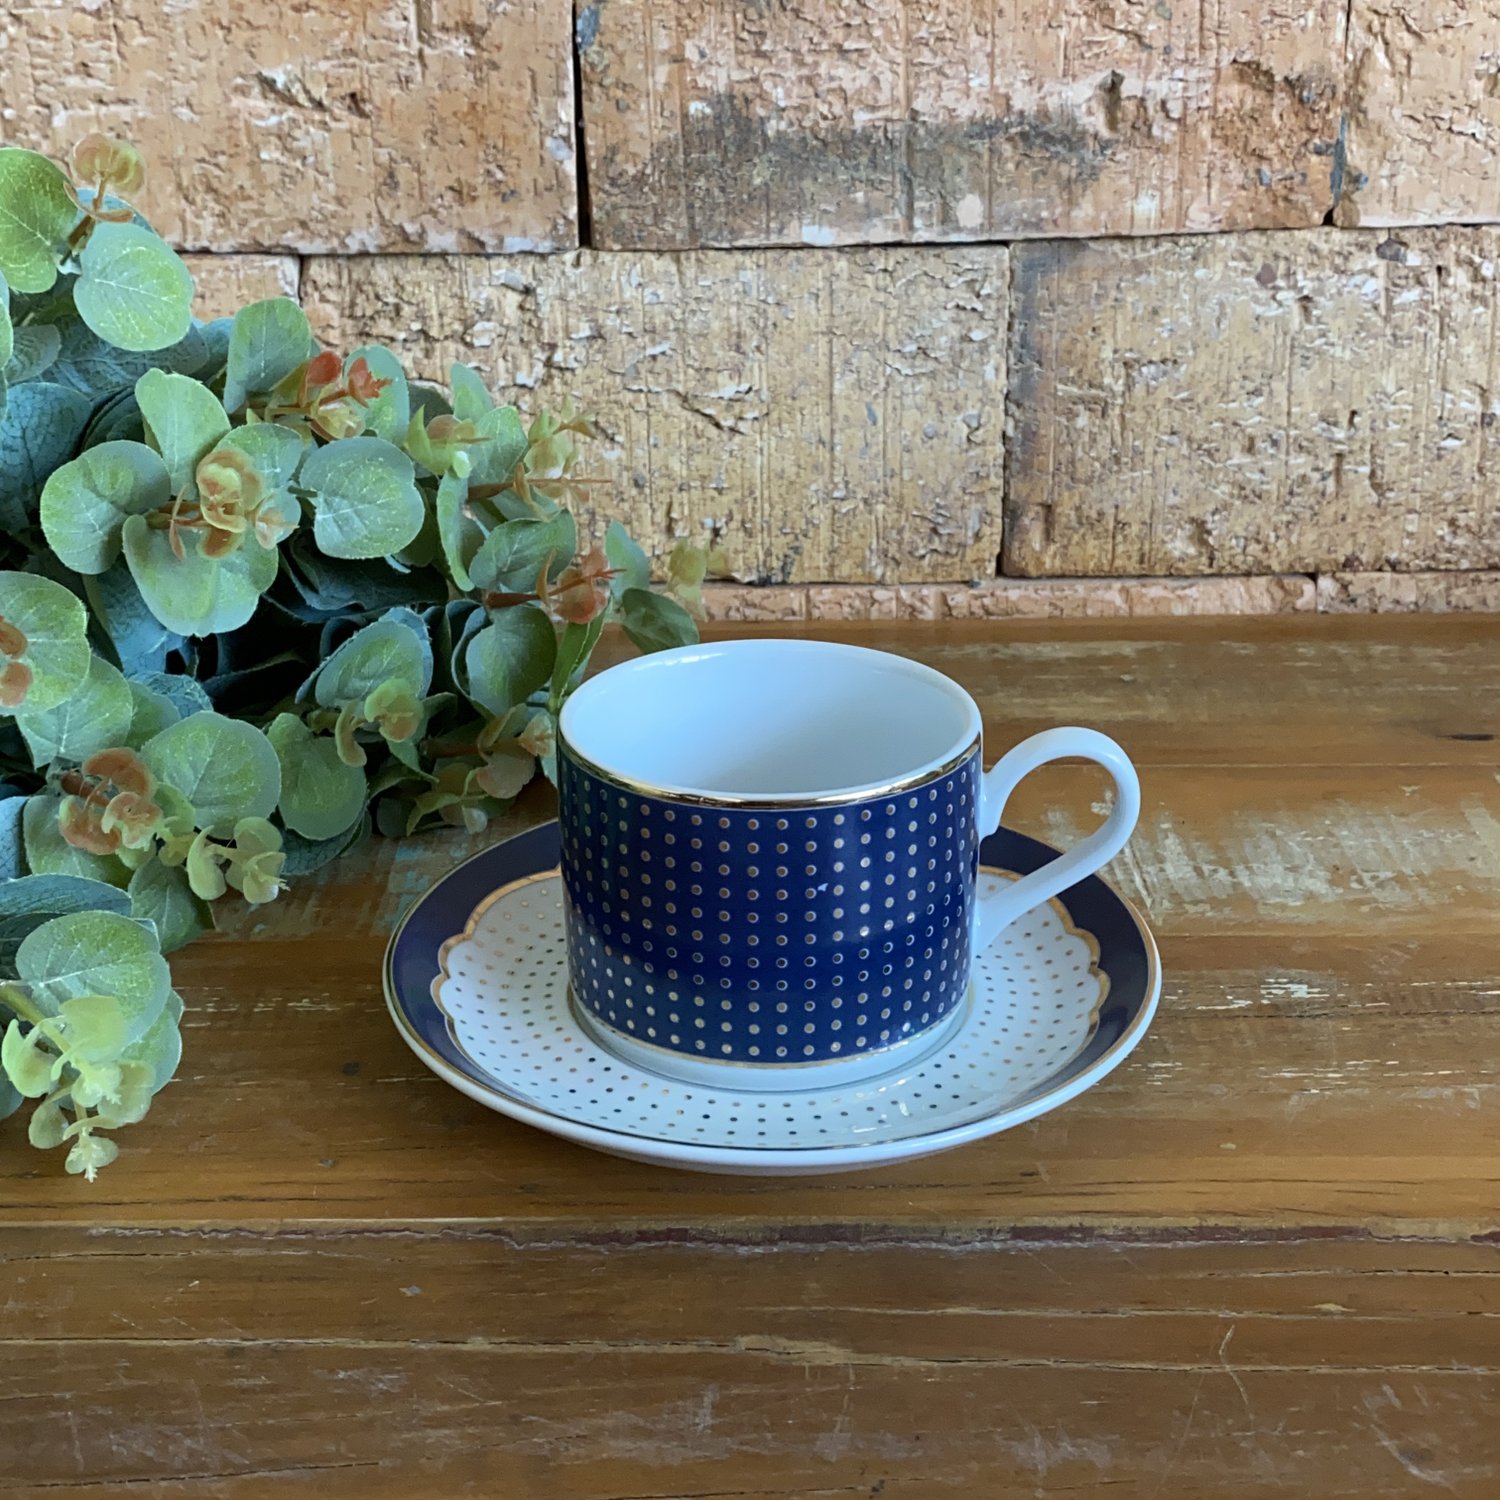 Um jogo de chá com um bule e xícaras de chá sobre uma mesa.